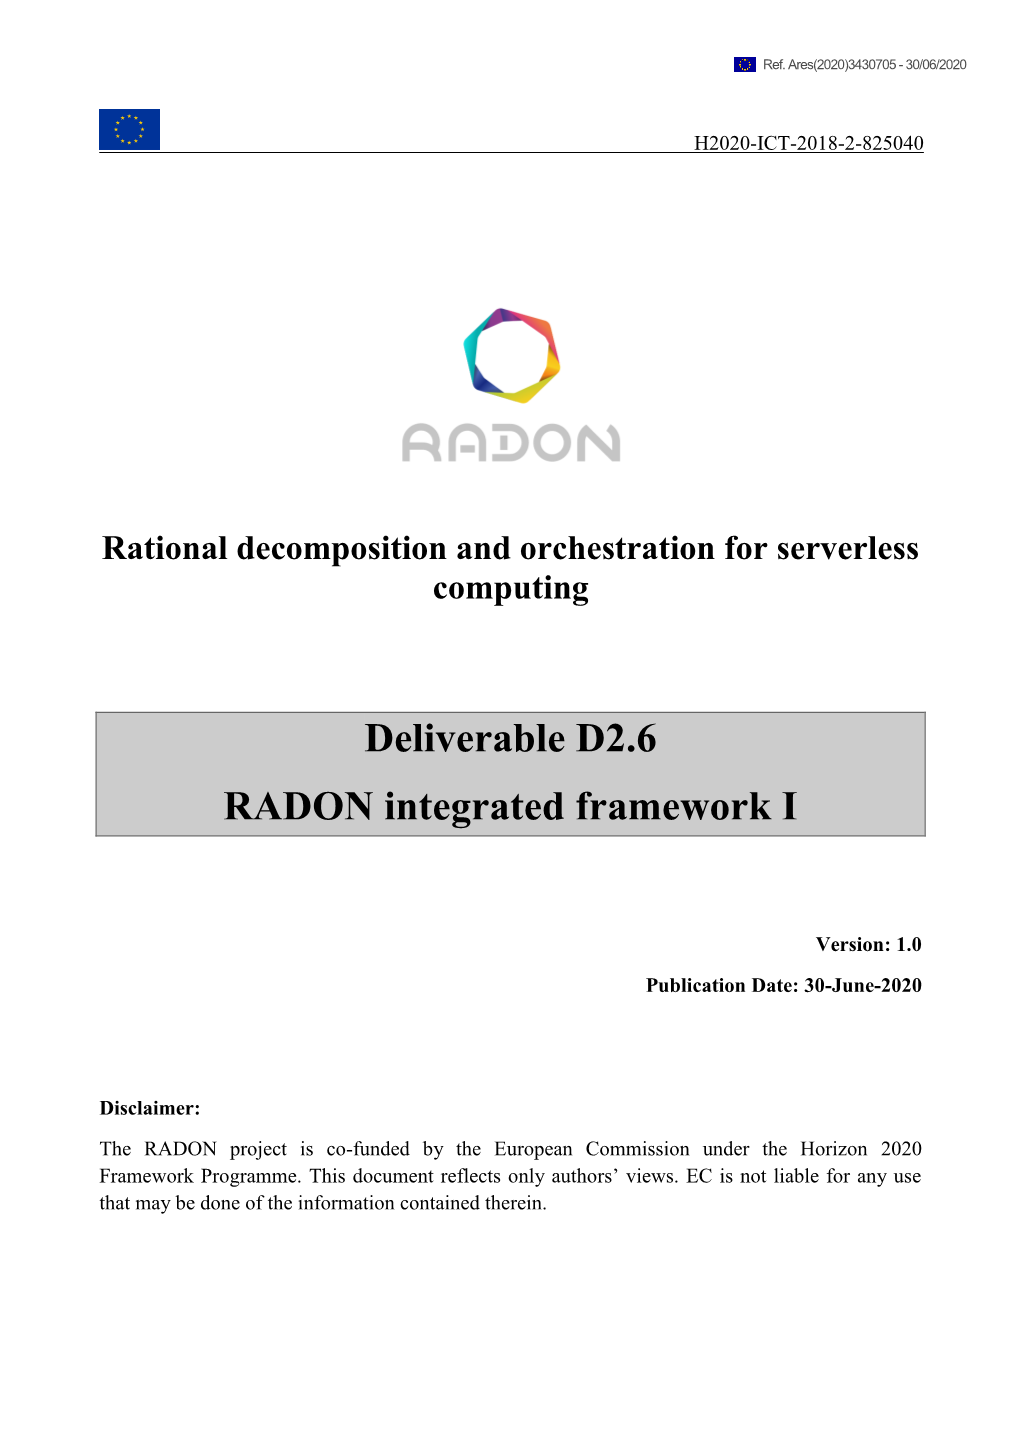 Deliverable D2.6 RADON Integrated Framework I